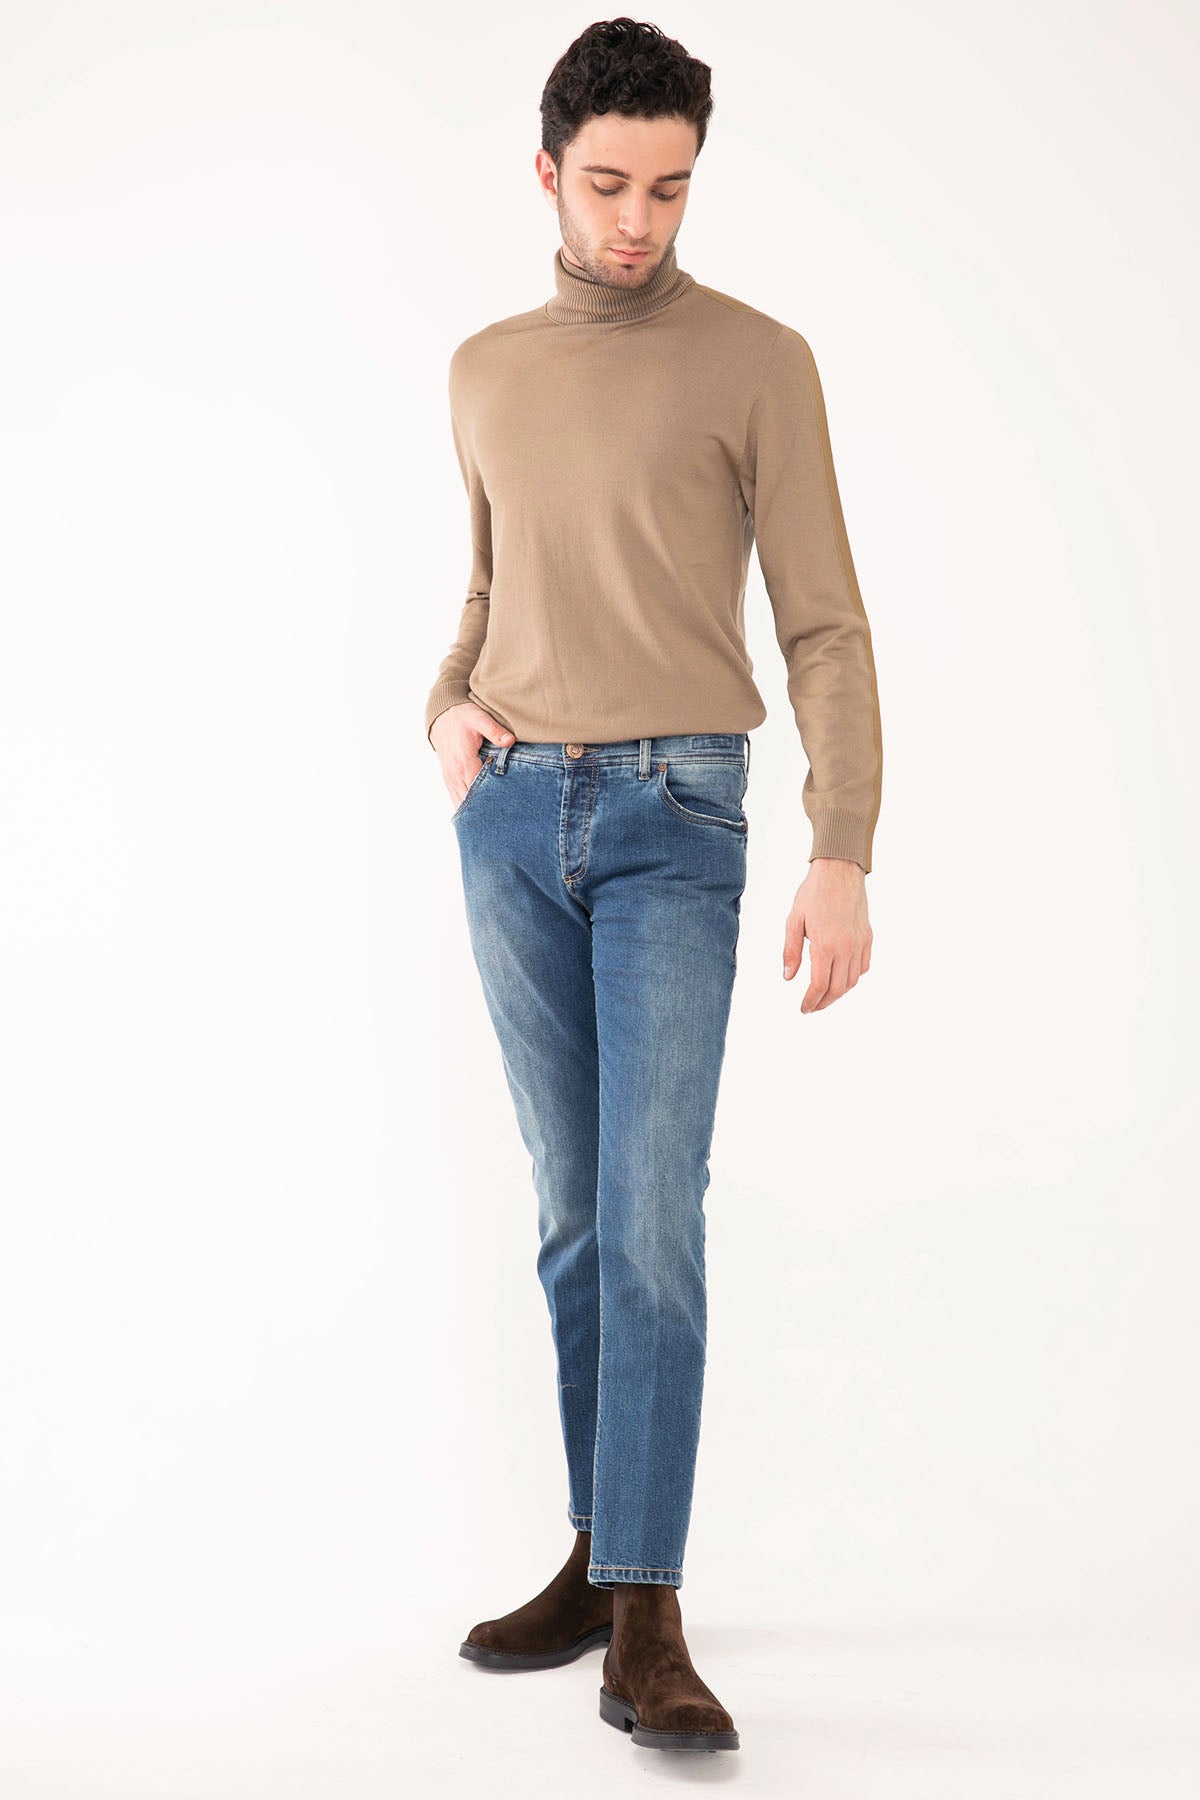 Richard J. Brown Tokyo Jeans-Libas Trendy Fashion Store